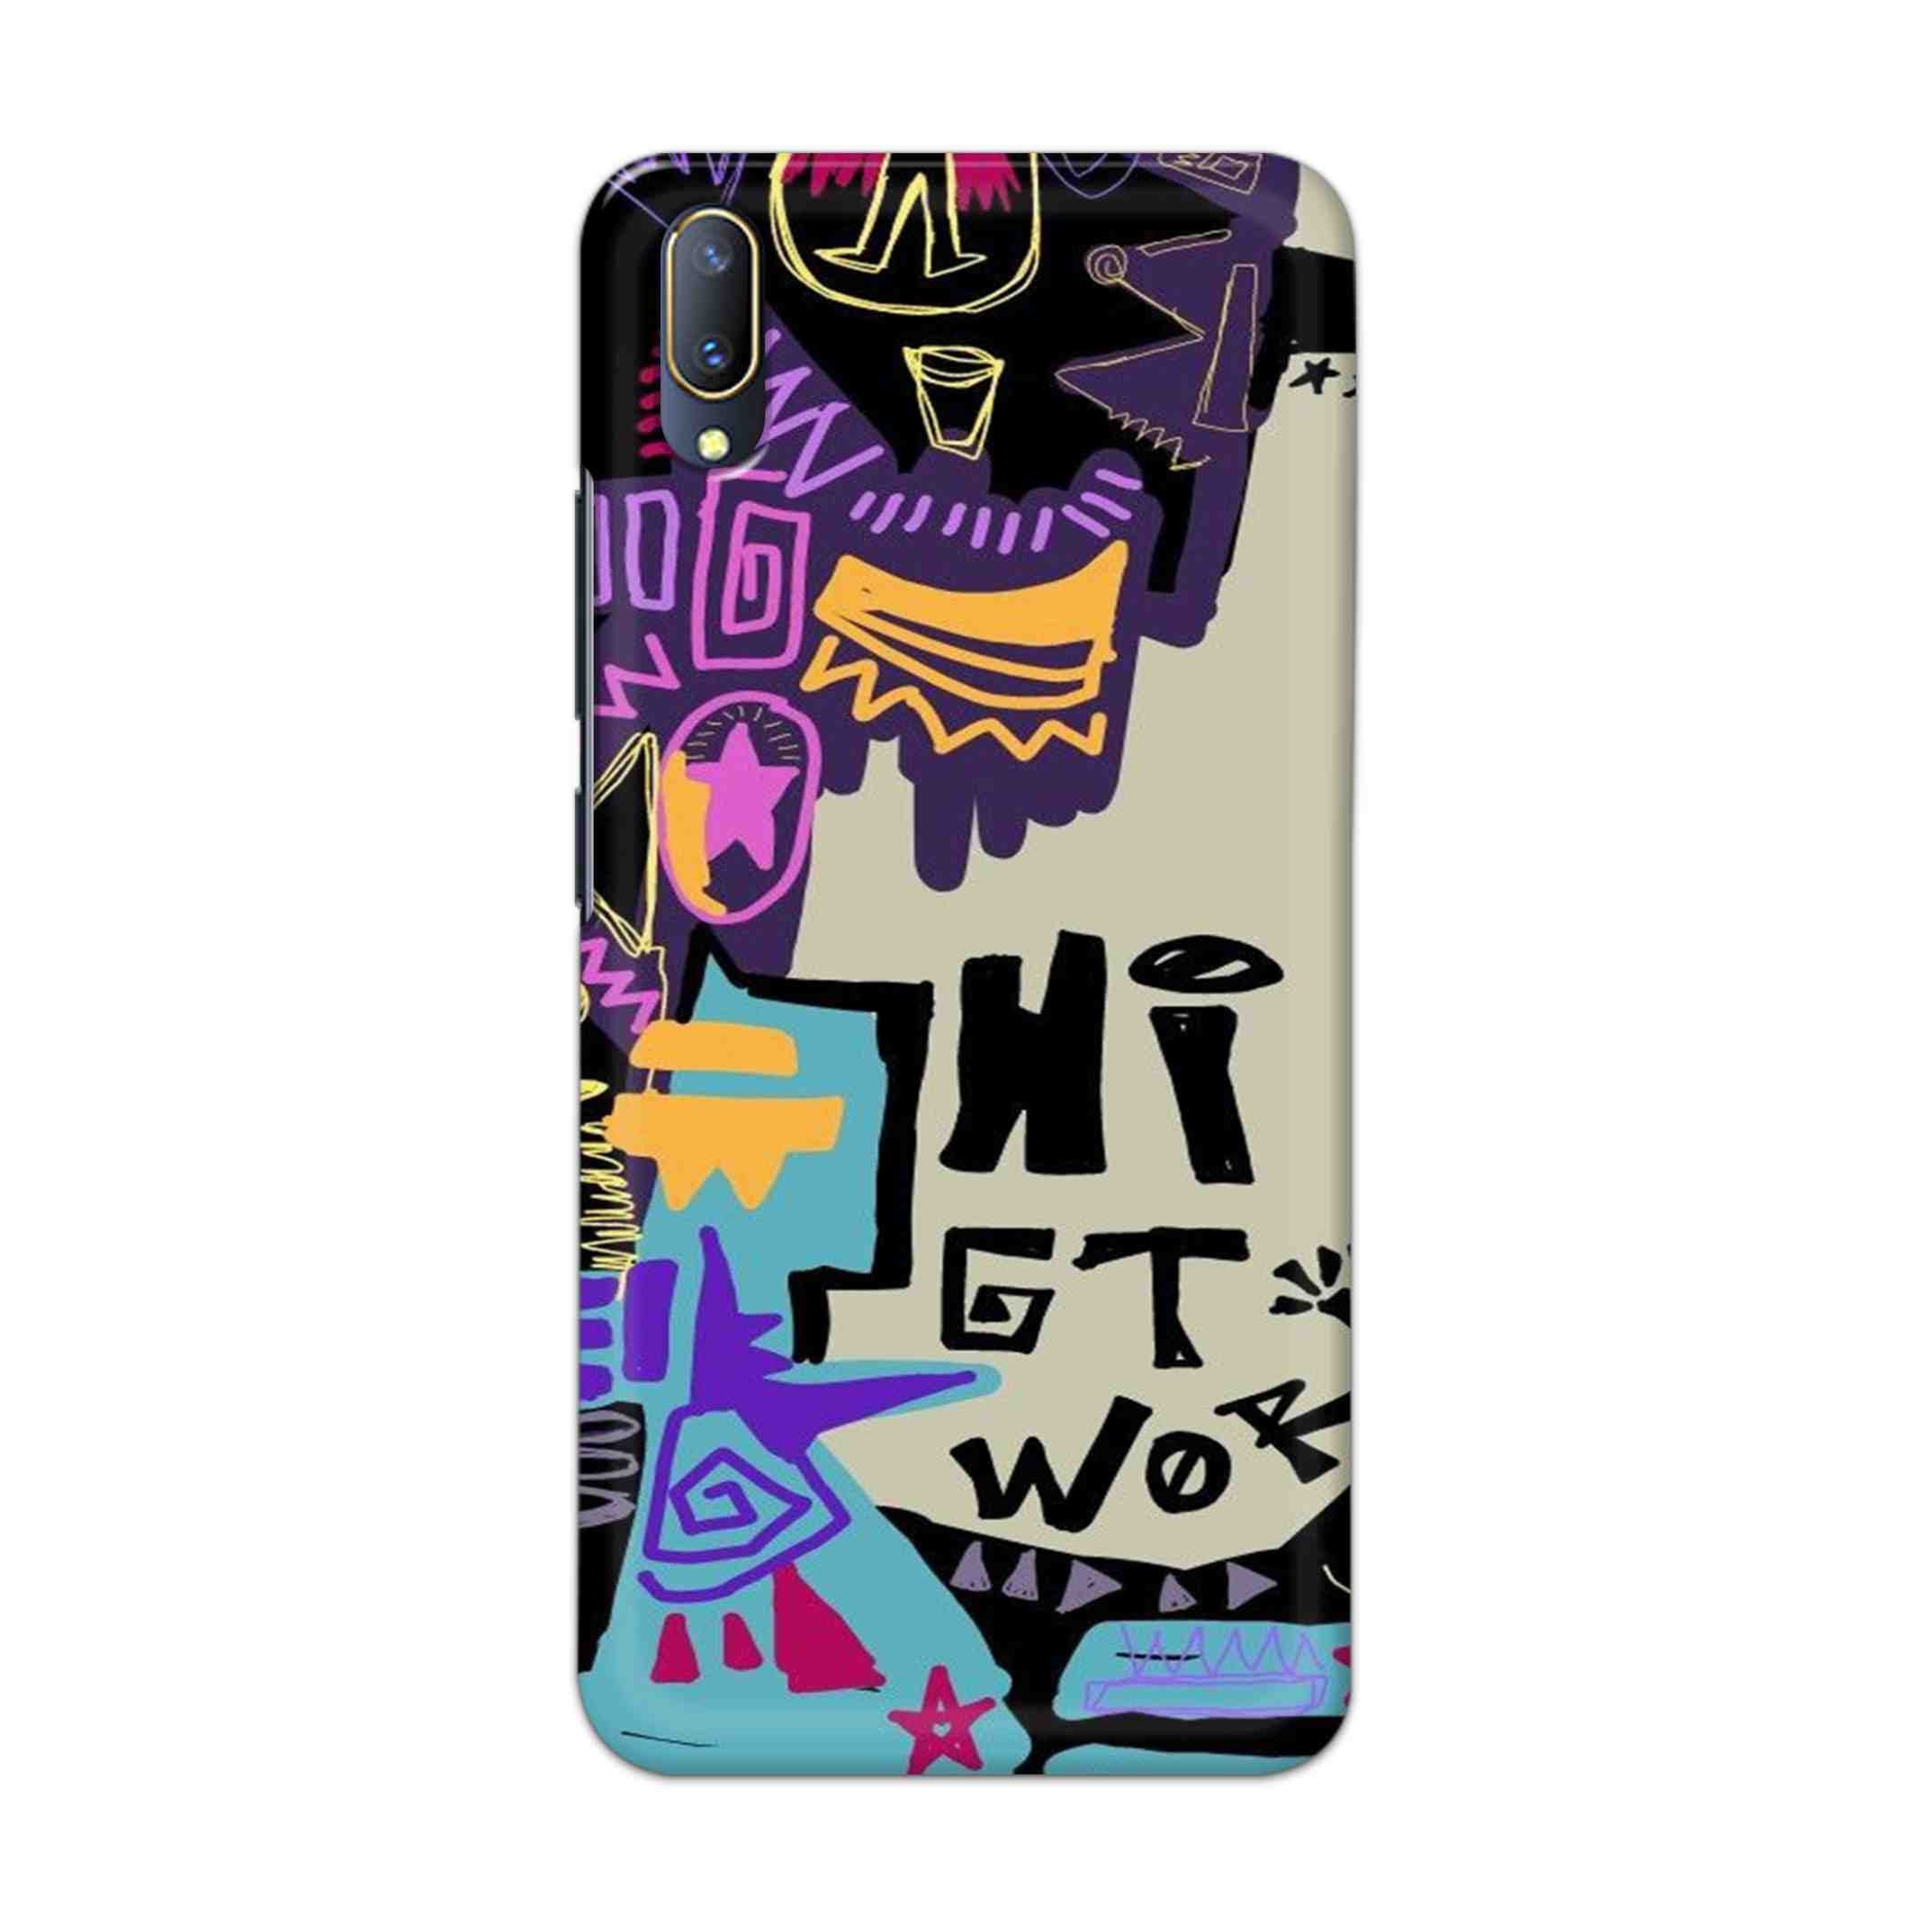 Buy Hi Gt World Hard Back Mobile Phone Case Cover For V11 PRO Online